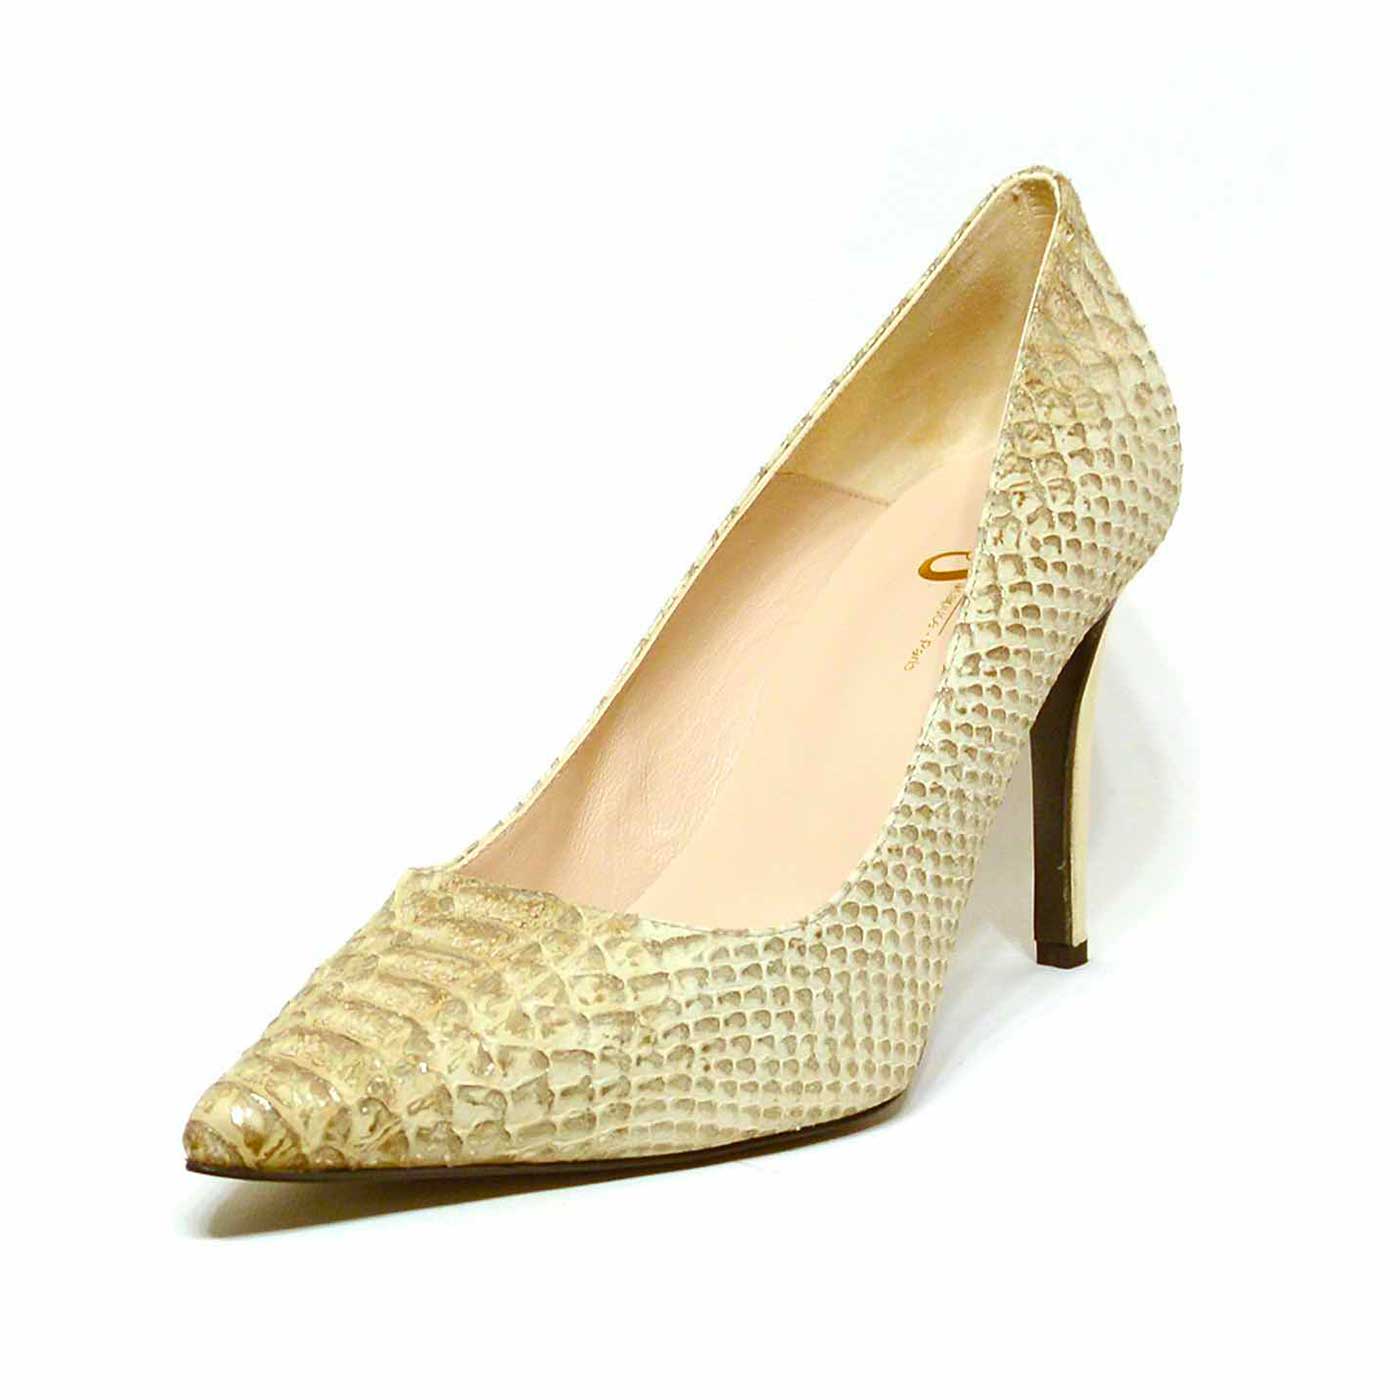 escarpins métallisées beige or, chaussures femme grande taille